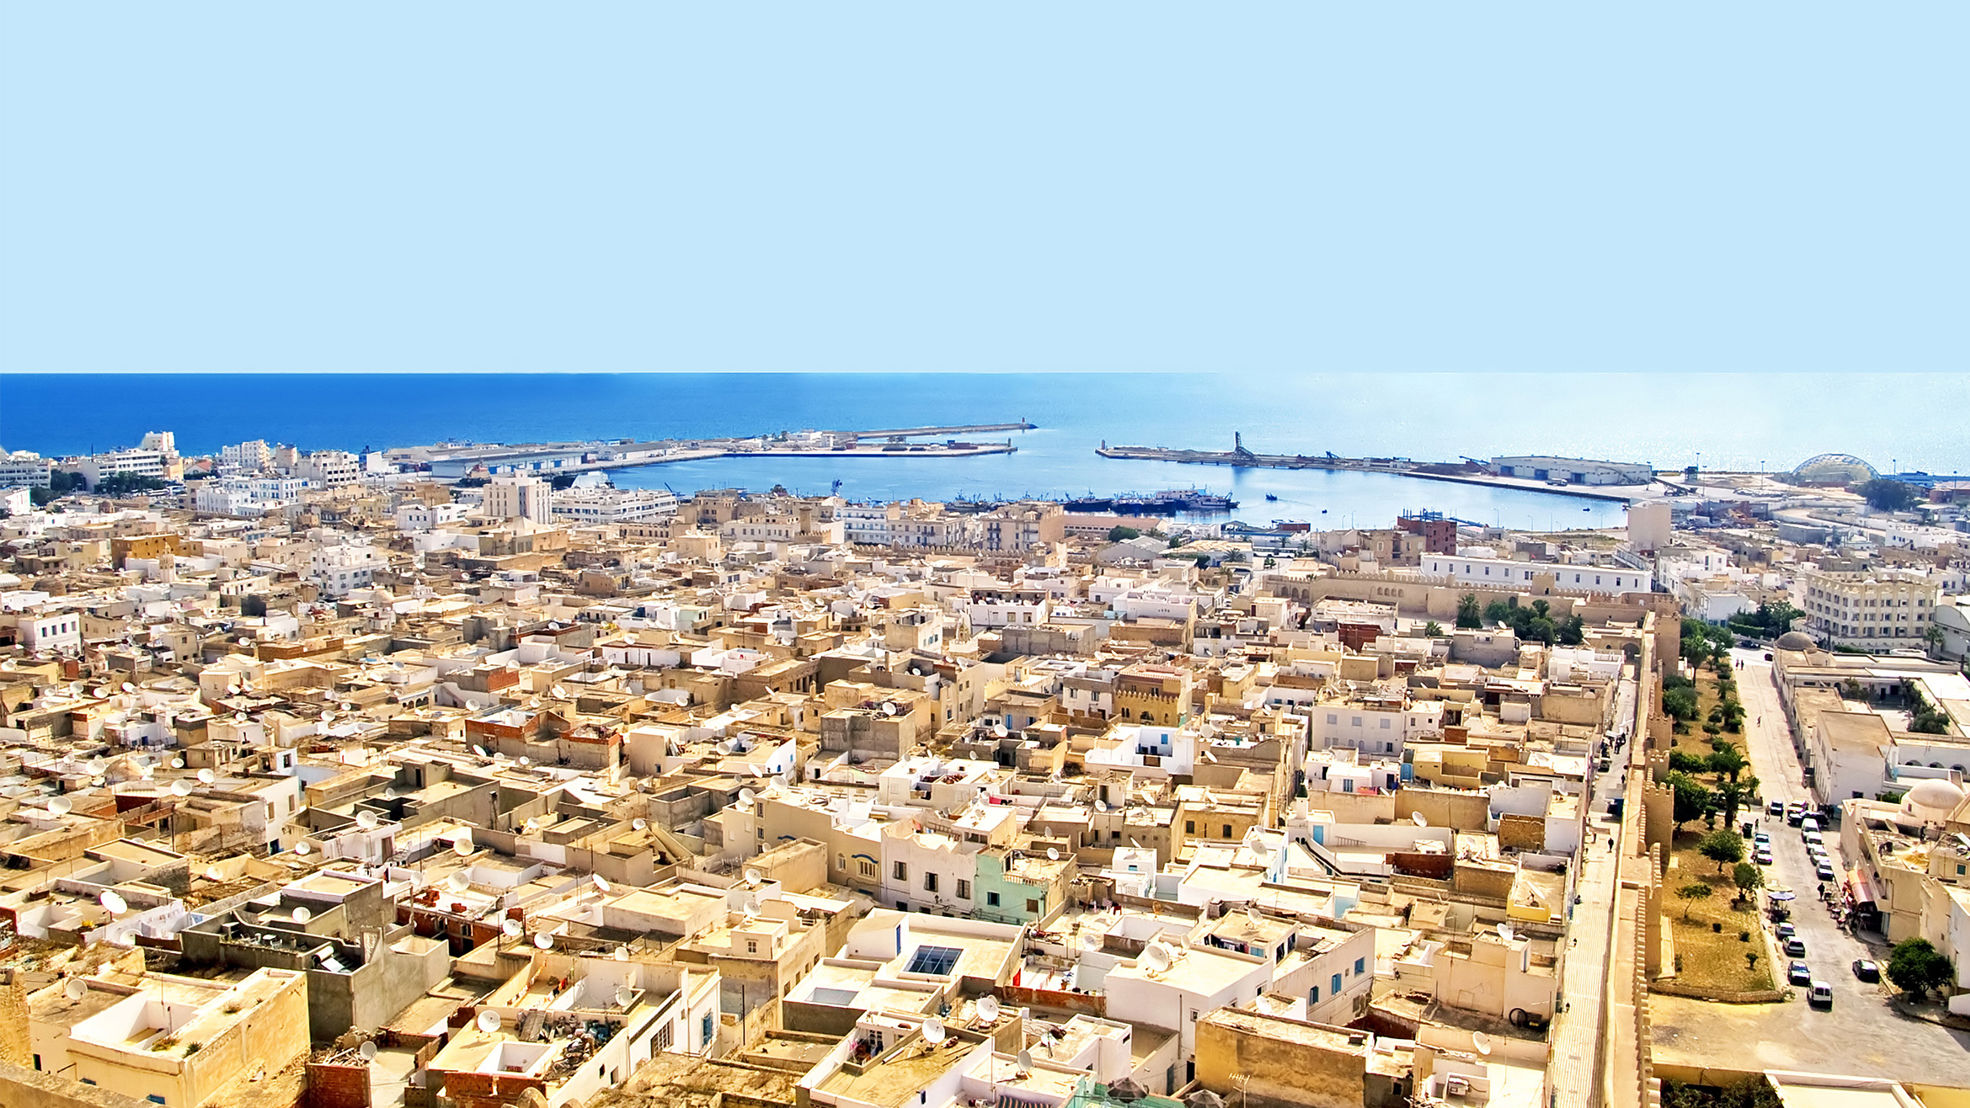 Tunisian sea side city view